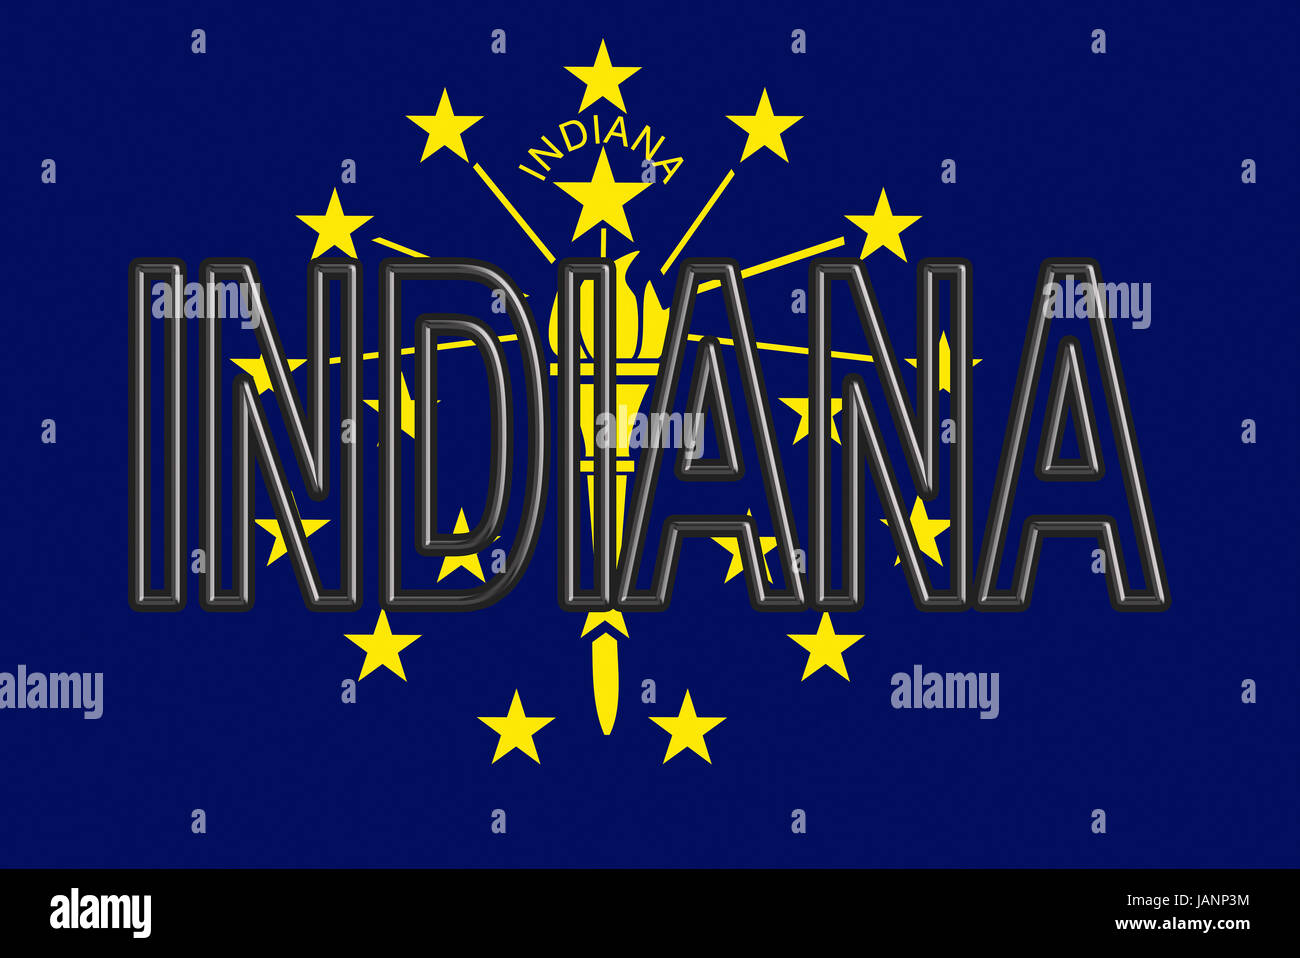 Abbildung der Flagge des Staates Indiana in den USA mit dem Staat auf die  Fahne geschrieben Stockfotografie - Alamy